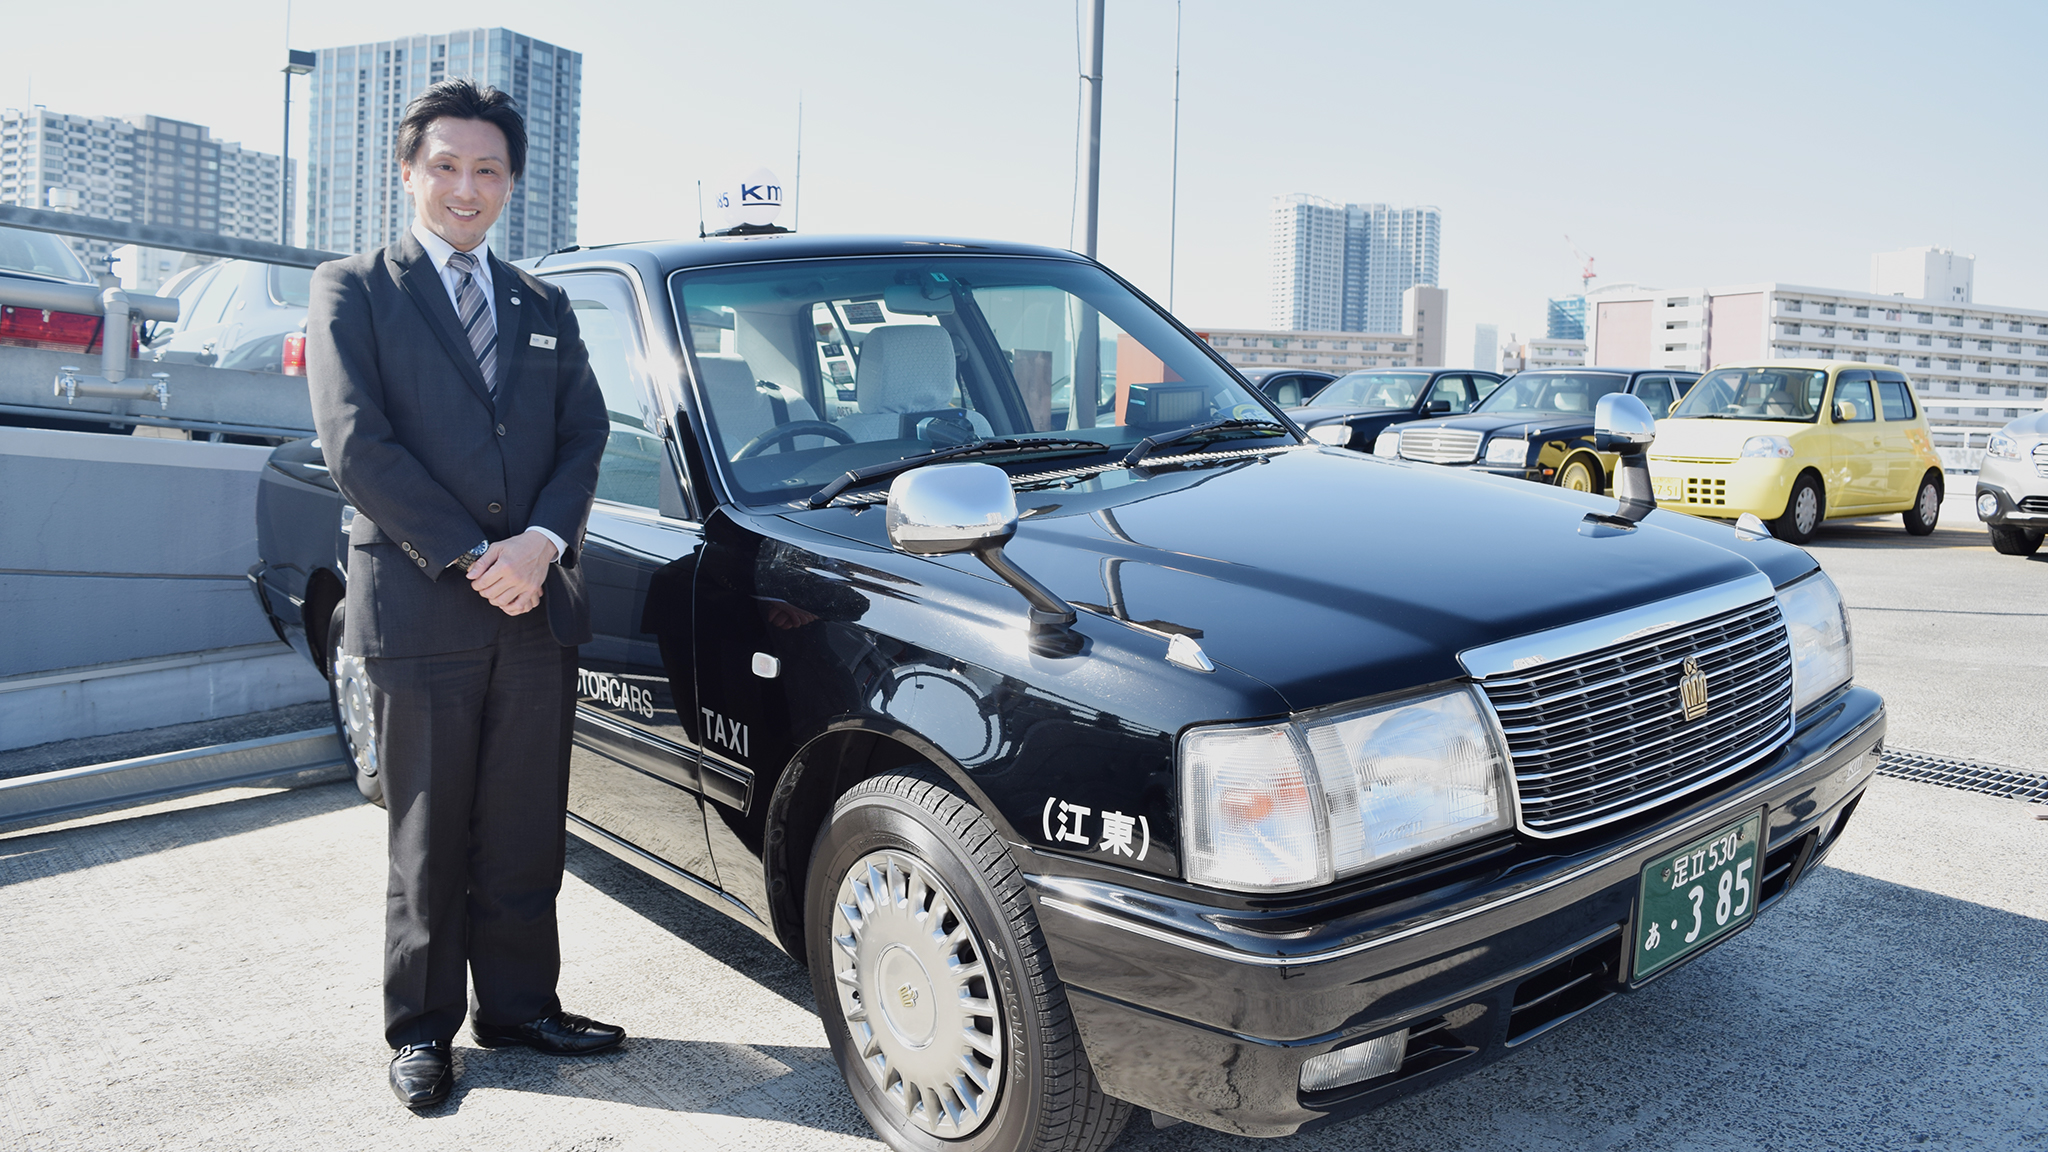 東京オリンピックで活躍するタクシードライバーを目指そう。元英会話講師が教える3つの㊙︎勉強法